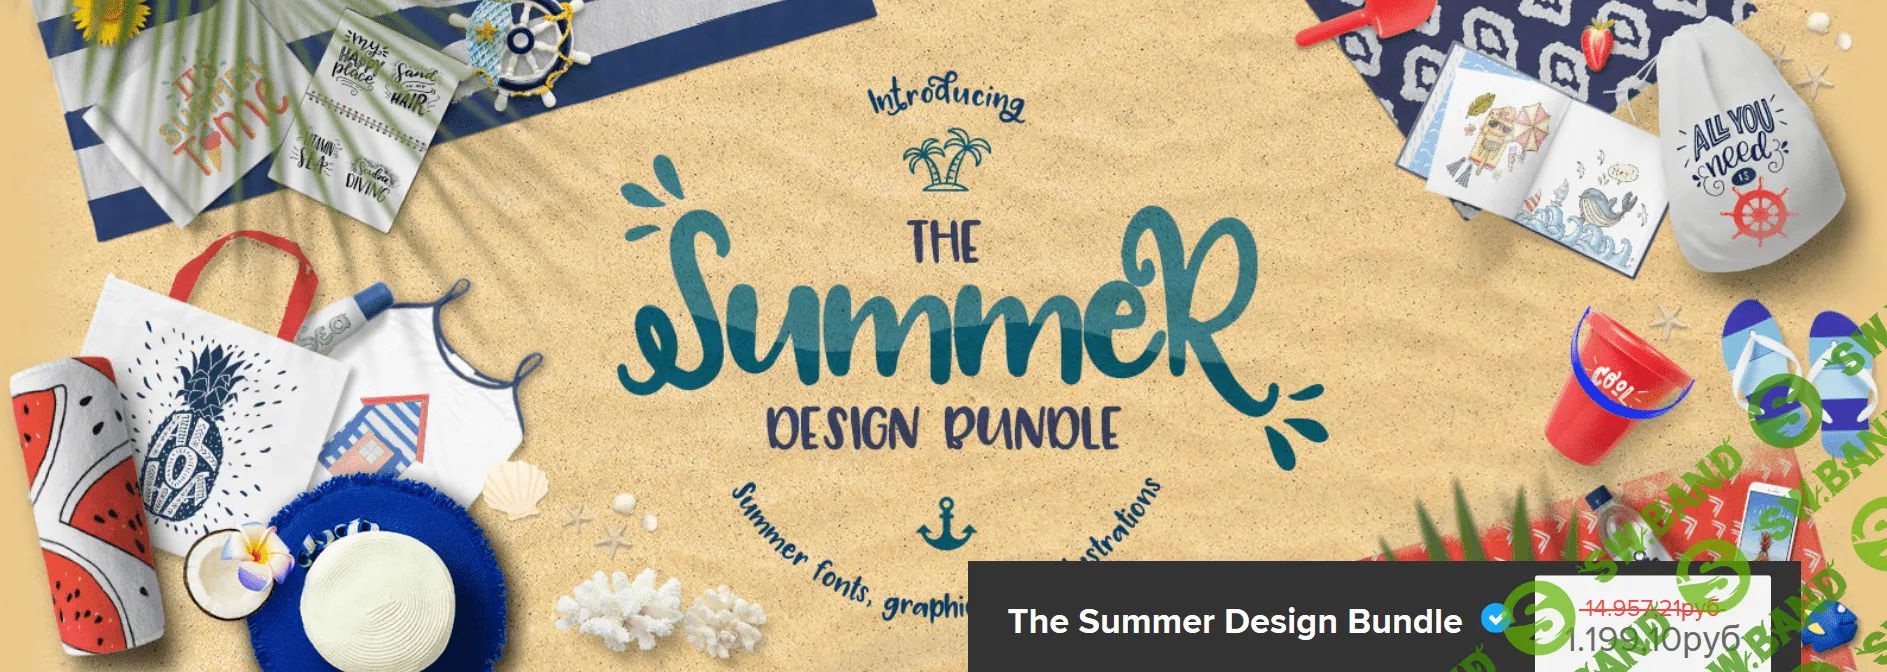 [Design Bundles] The Summer Design Bundle (2018)